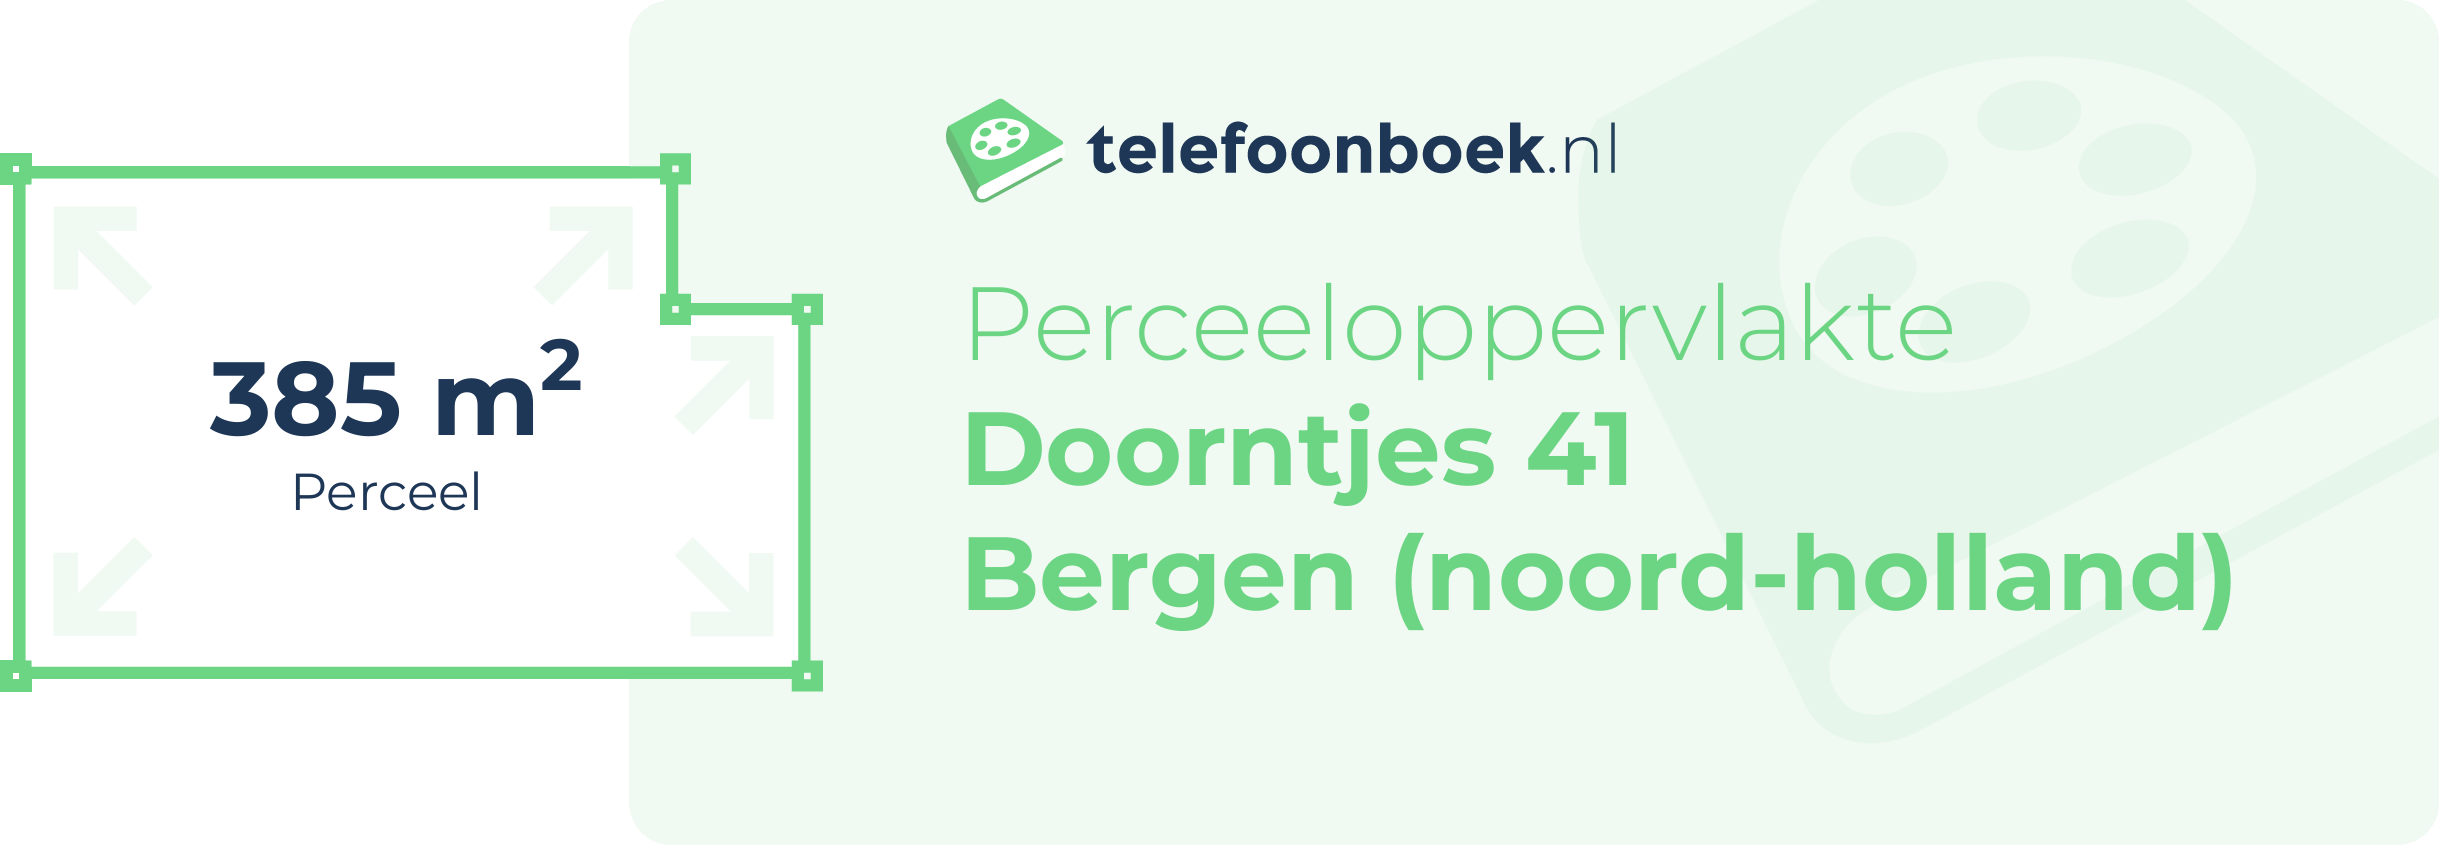 Perceeloppervlakte Doorntjes 41 Bergen (Noord-Holland)